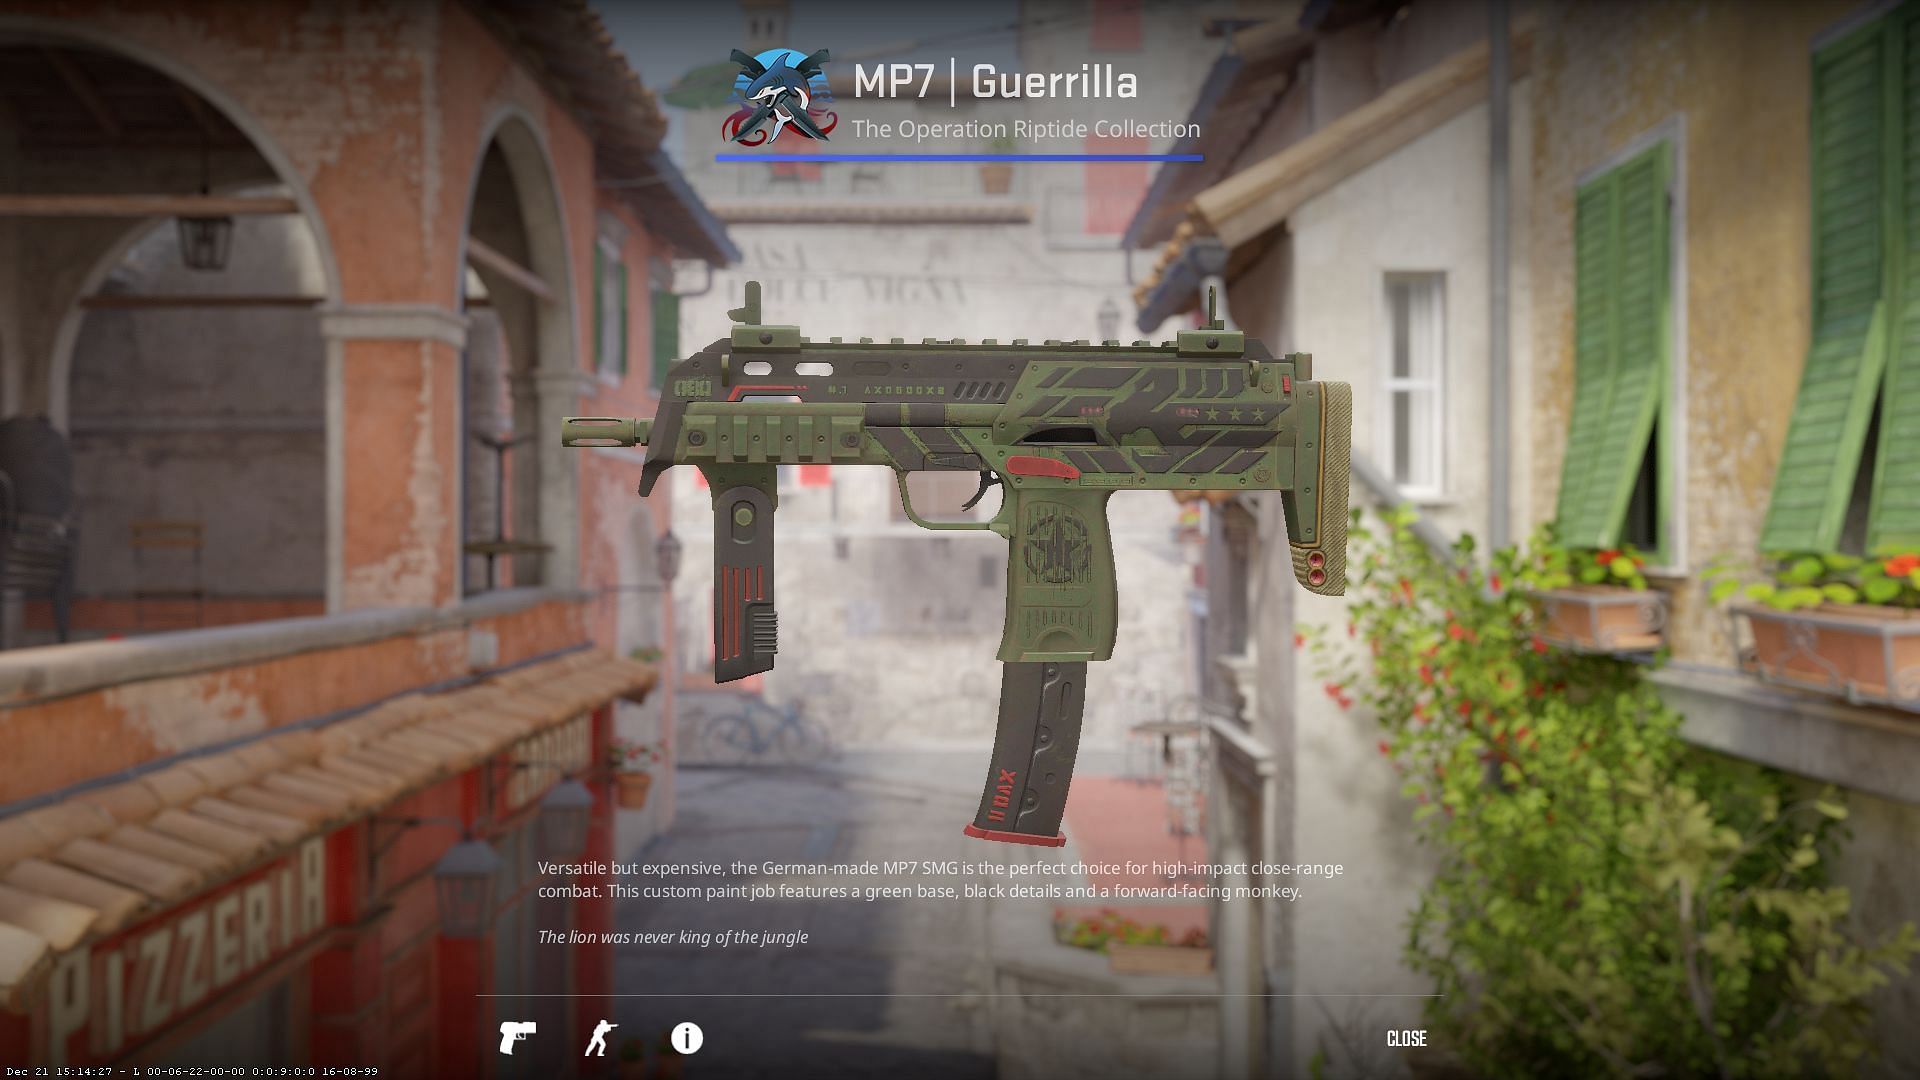 MP7 Guerrilla (Image via Valve)